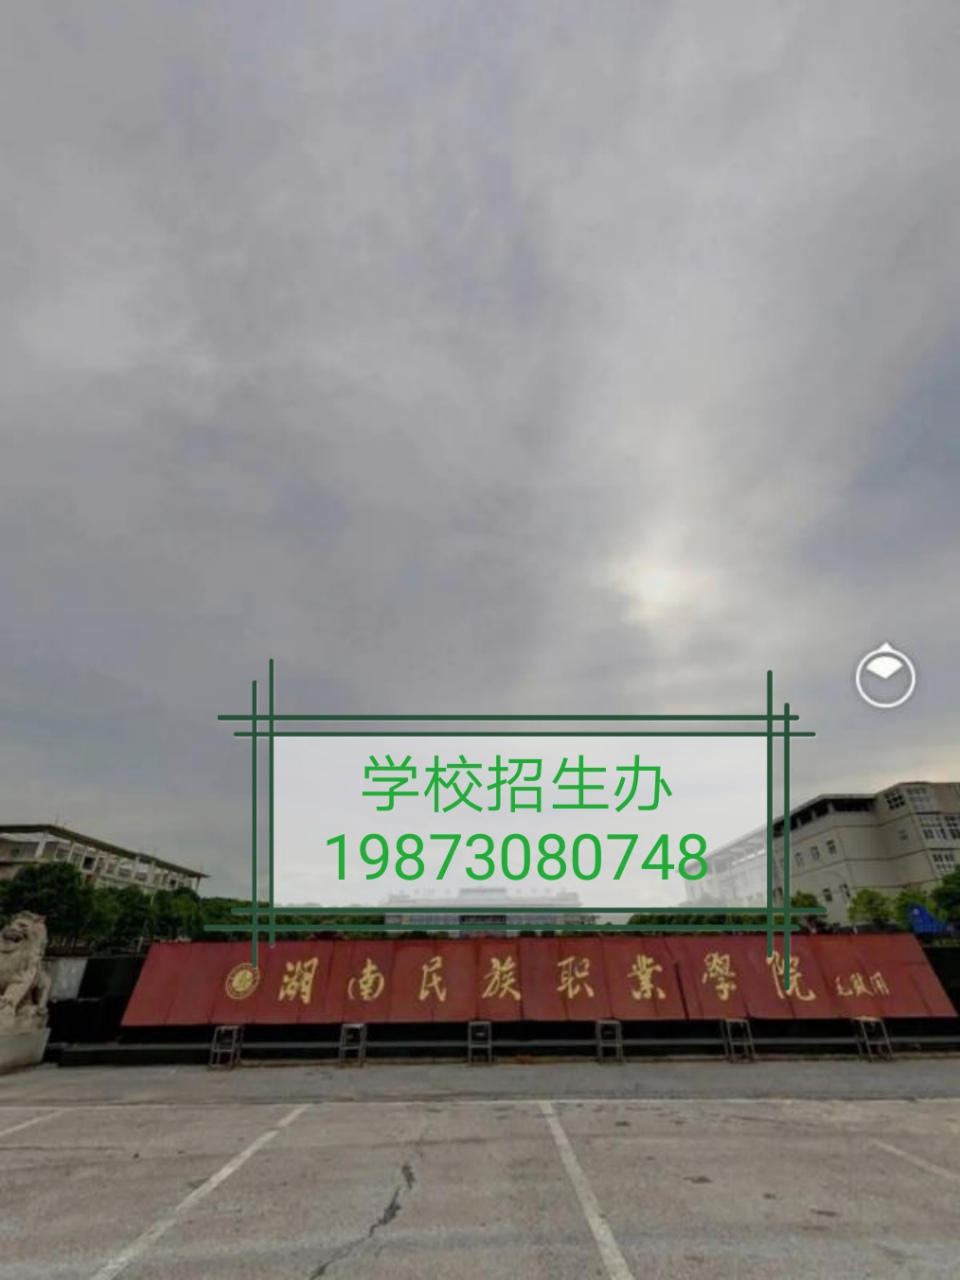 湖南民族职业学院百科图片